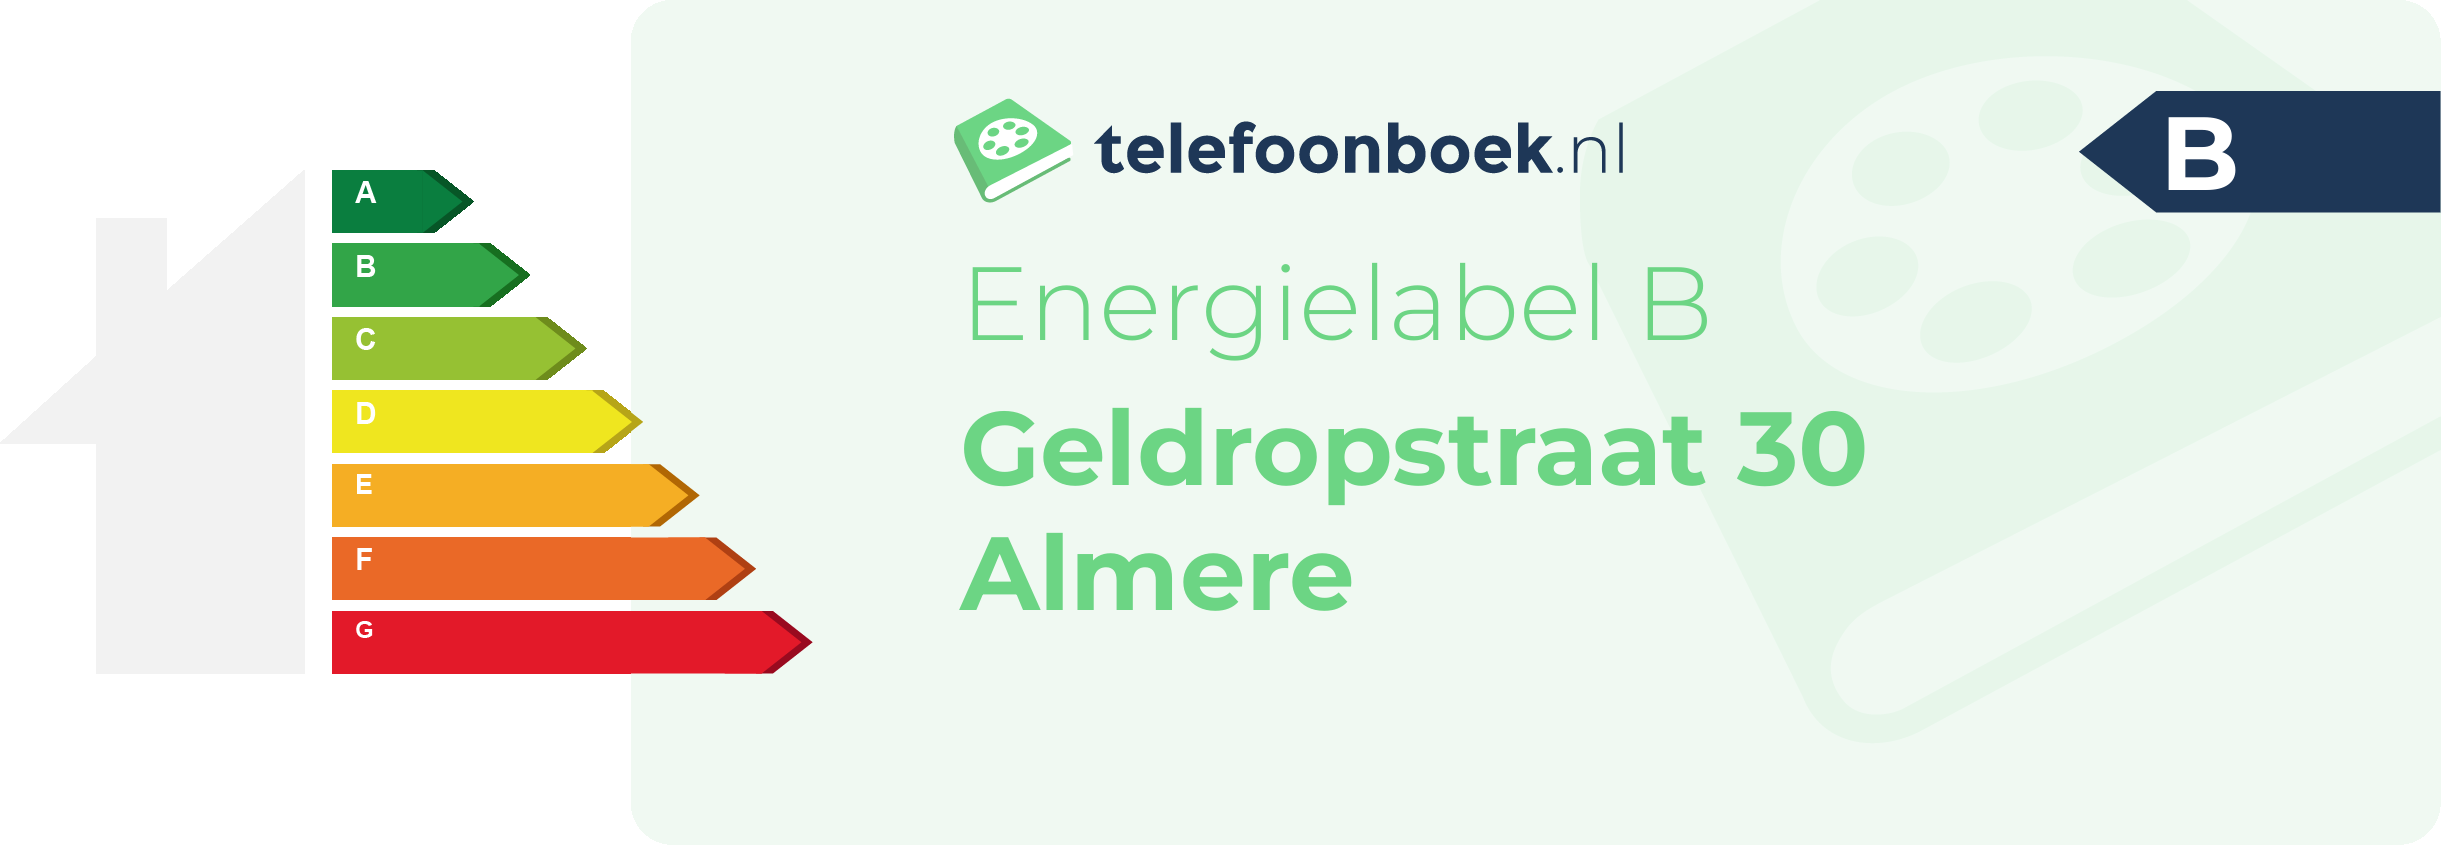 Energielabel Geldropstraat 30 Almere